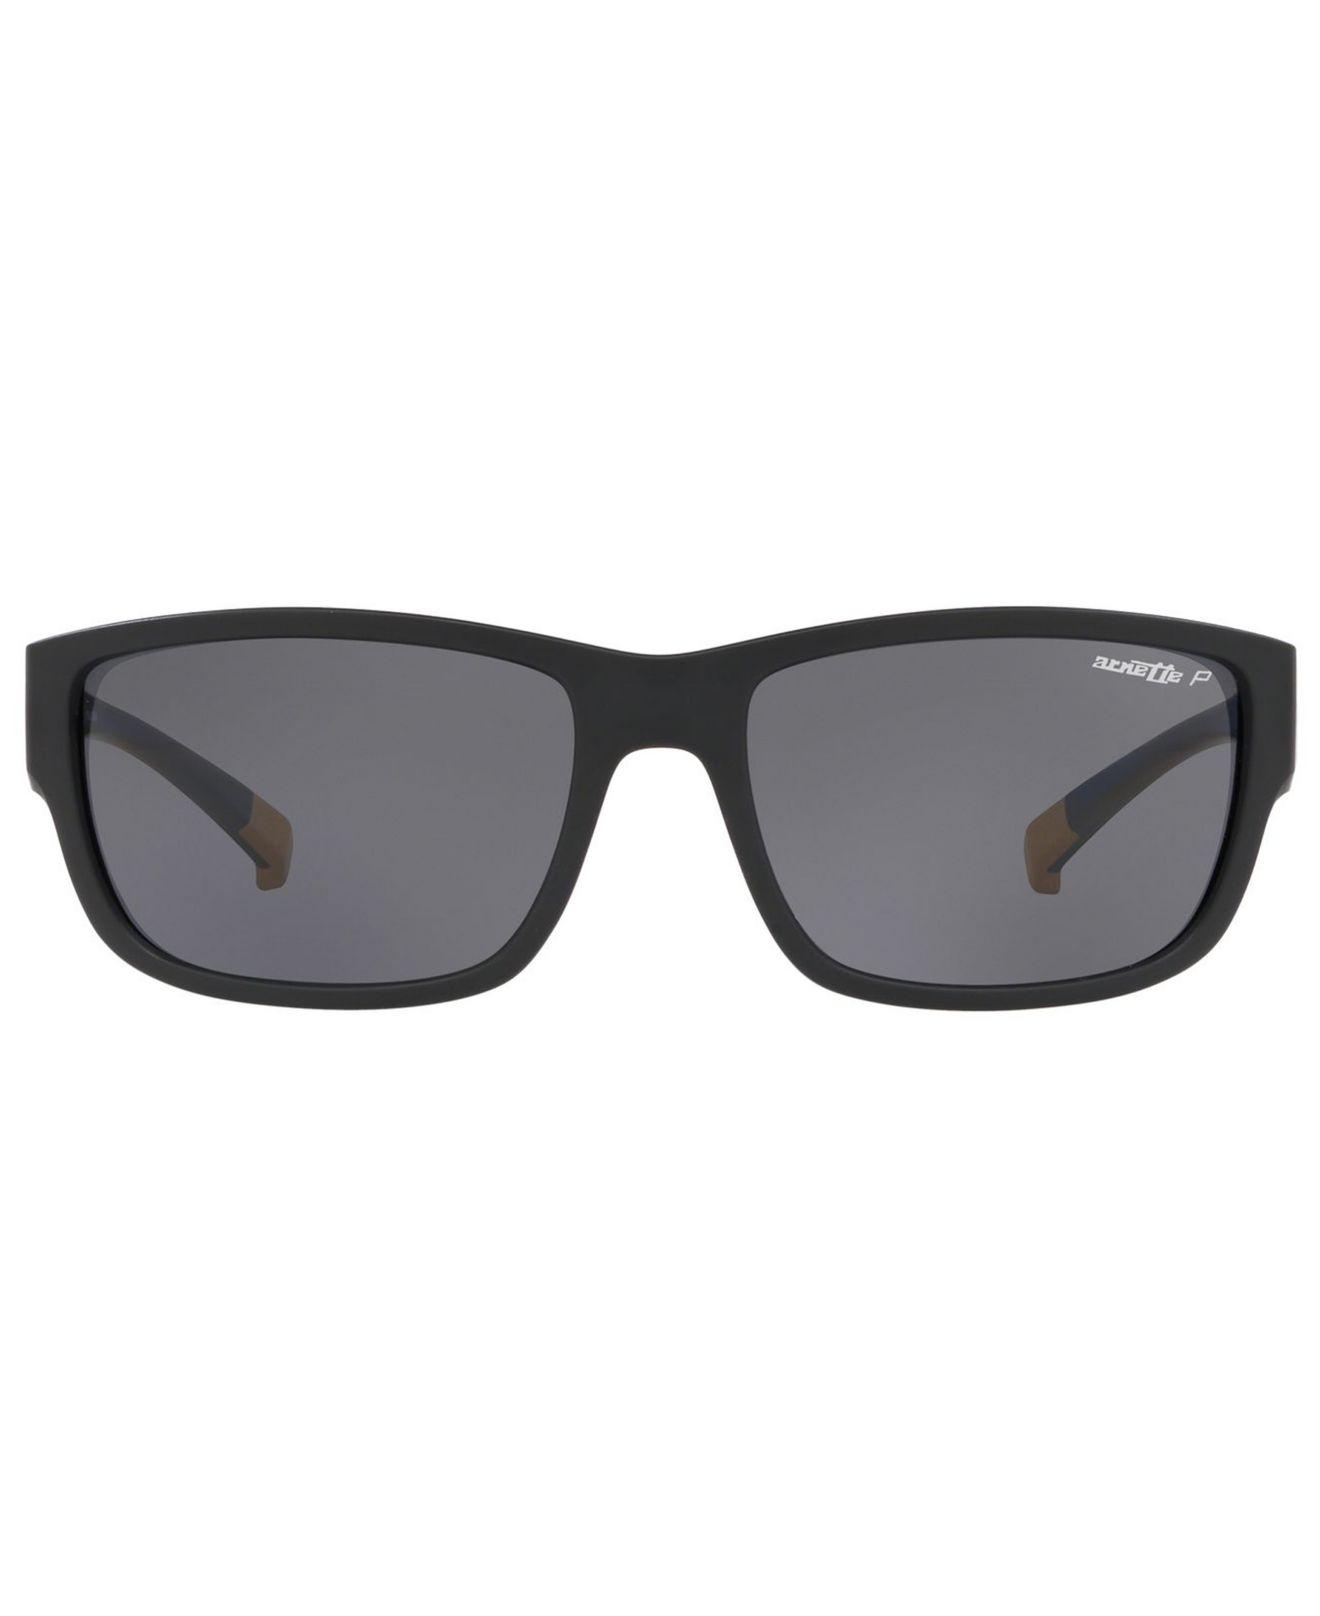 Lyst - Arnette Polarized Sunglasses, An4256 62 in Gray for Men